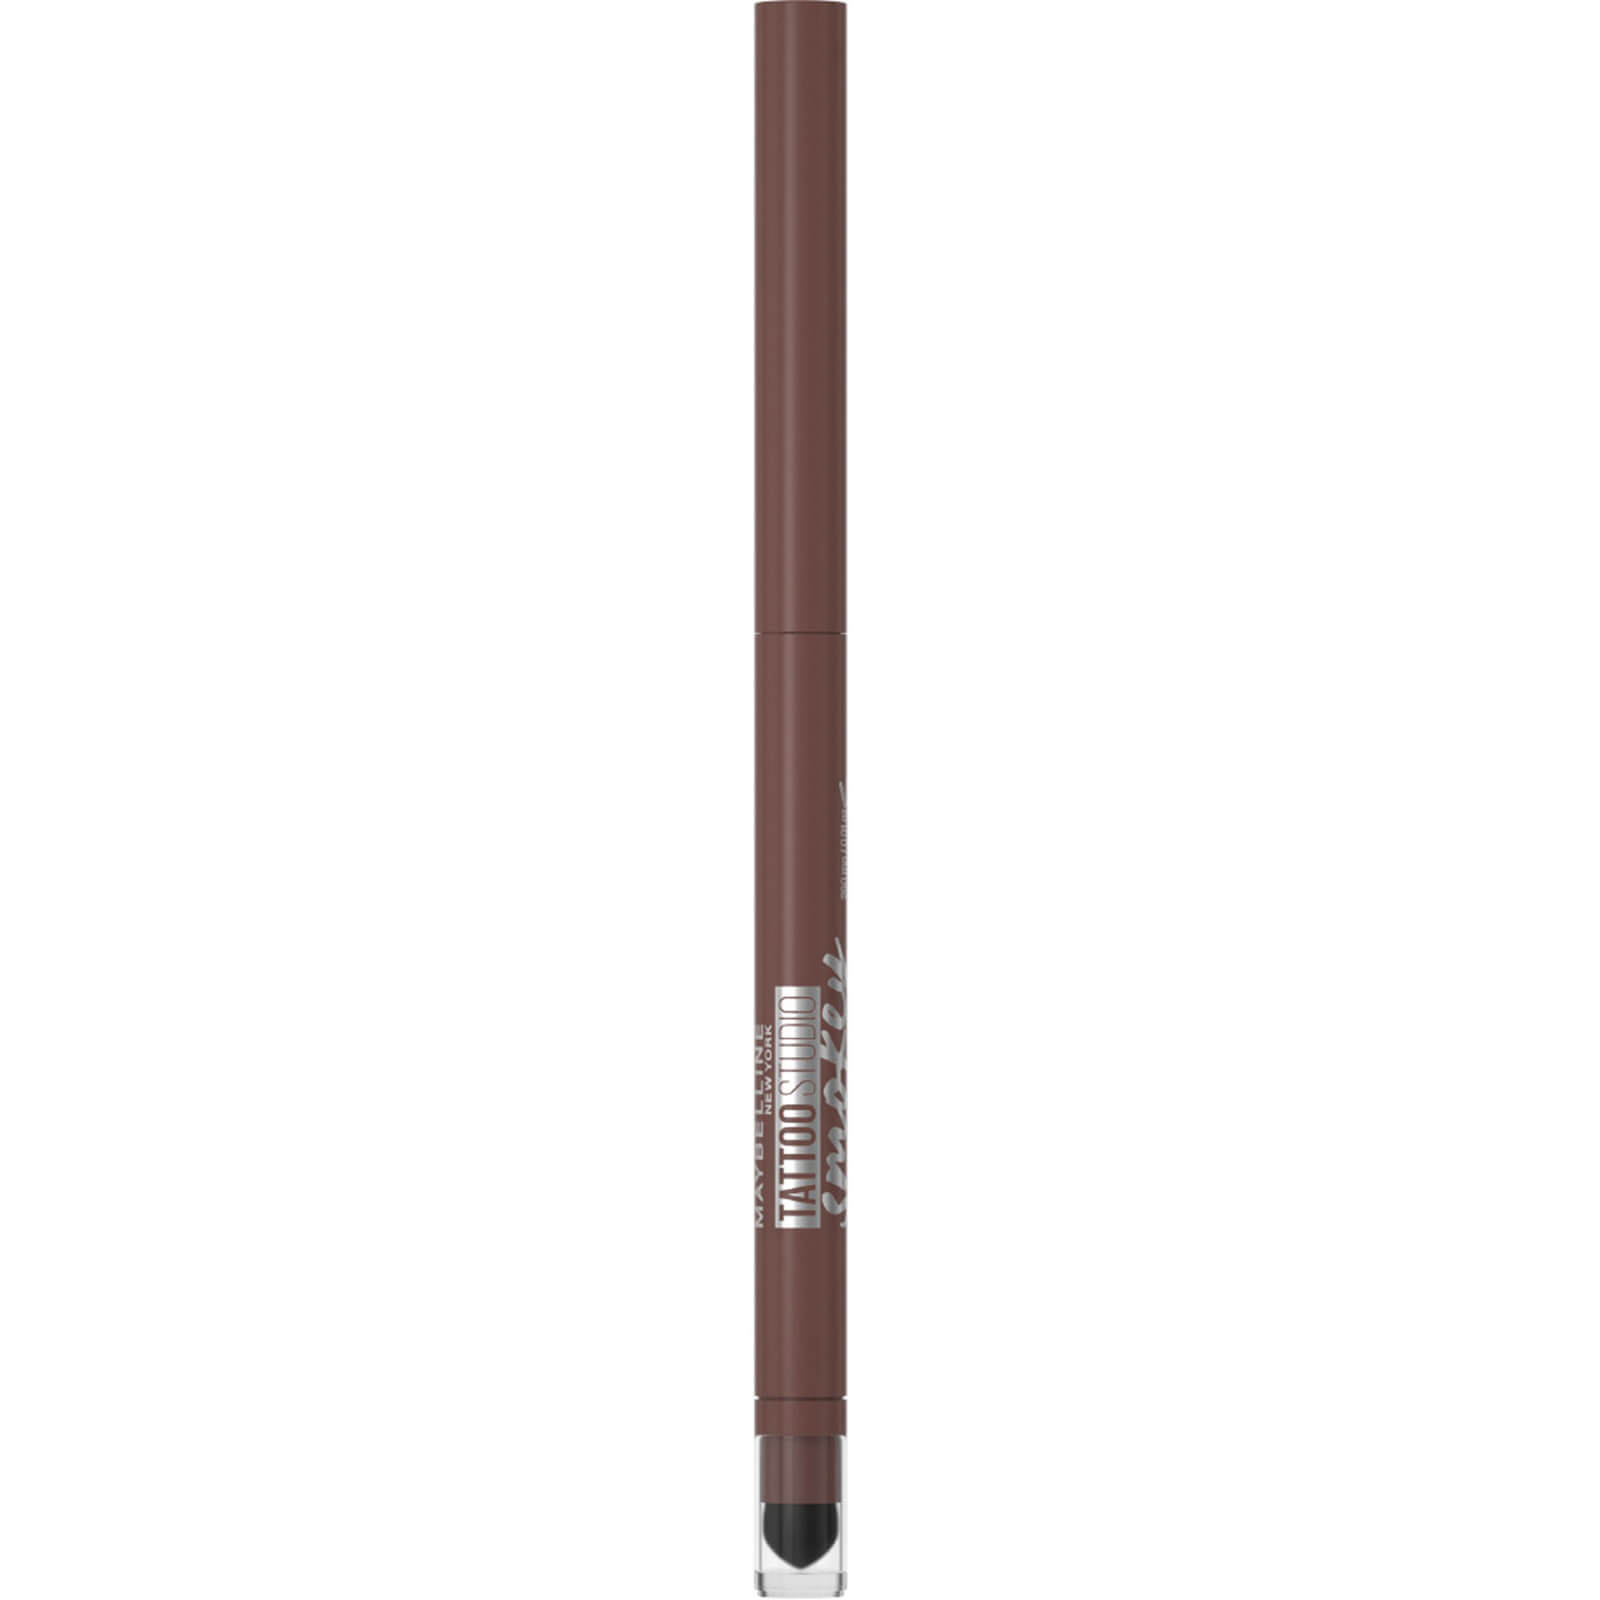 Maybelline Tattoo Liner Smokey Gel Pencil Eye Liner Waterproof 5,12g (Verschiedene Farbnuancen) - 40 Smokey Brown